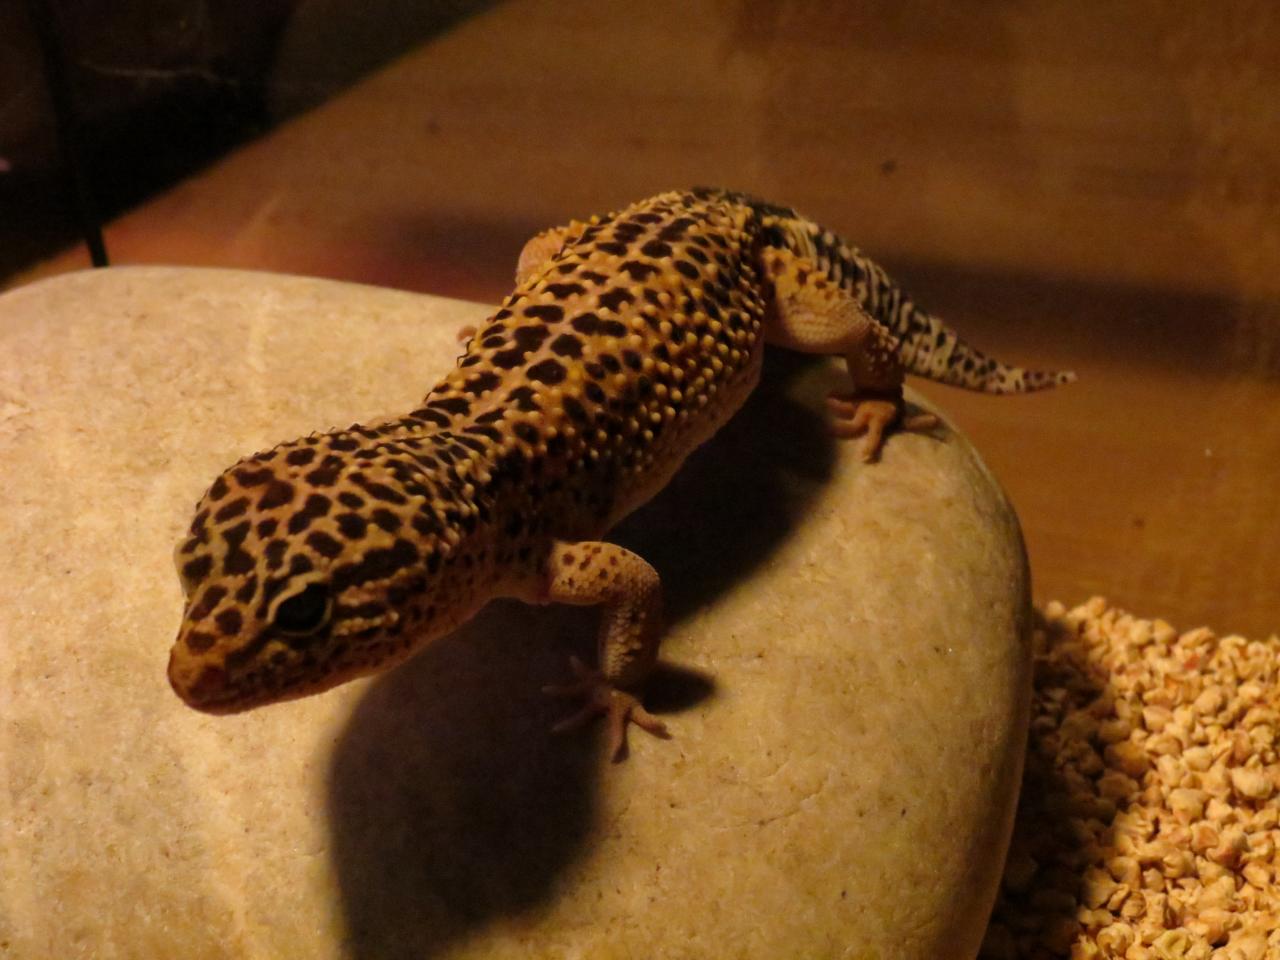 Vente de criquet vivant pour reptile pogona gecko leopard